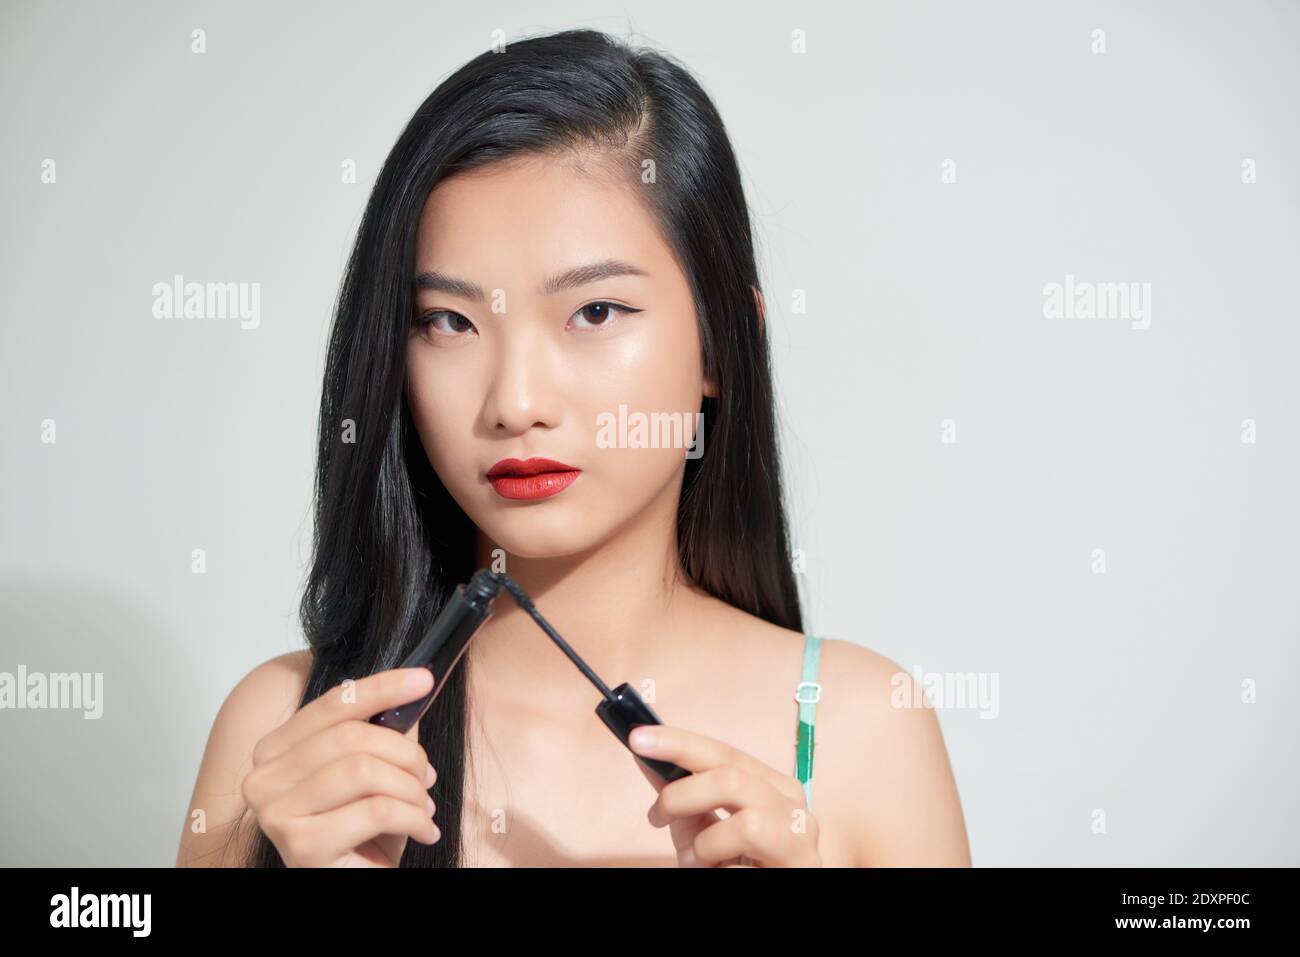 Ritratto di giovane bellissima femmina con spazzolino per mascara guardando la fotocamera Foto Stock